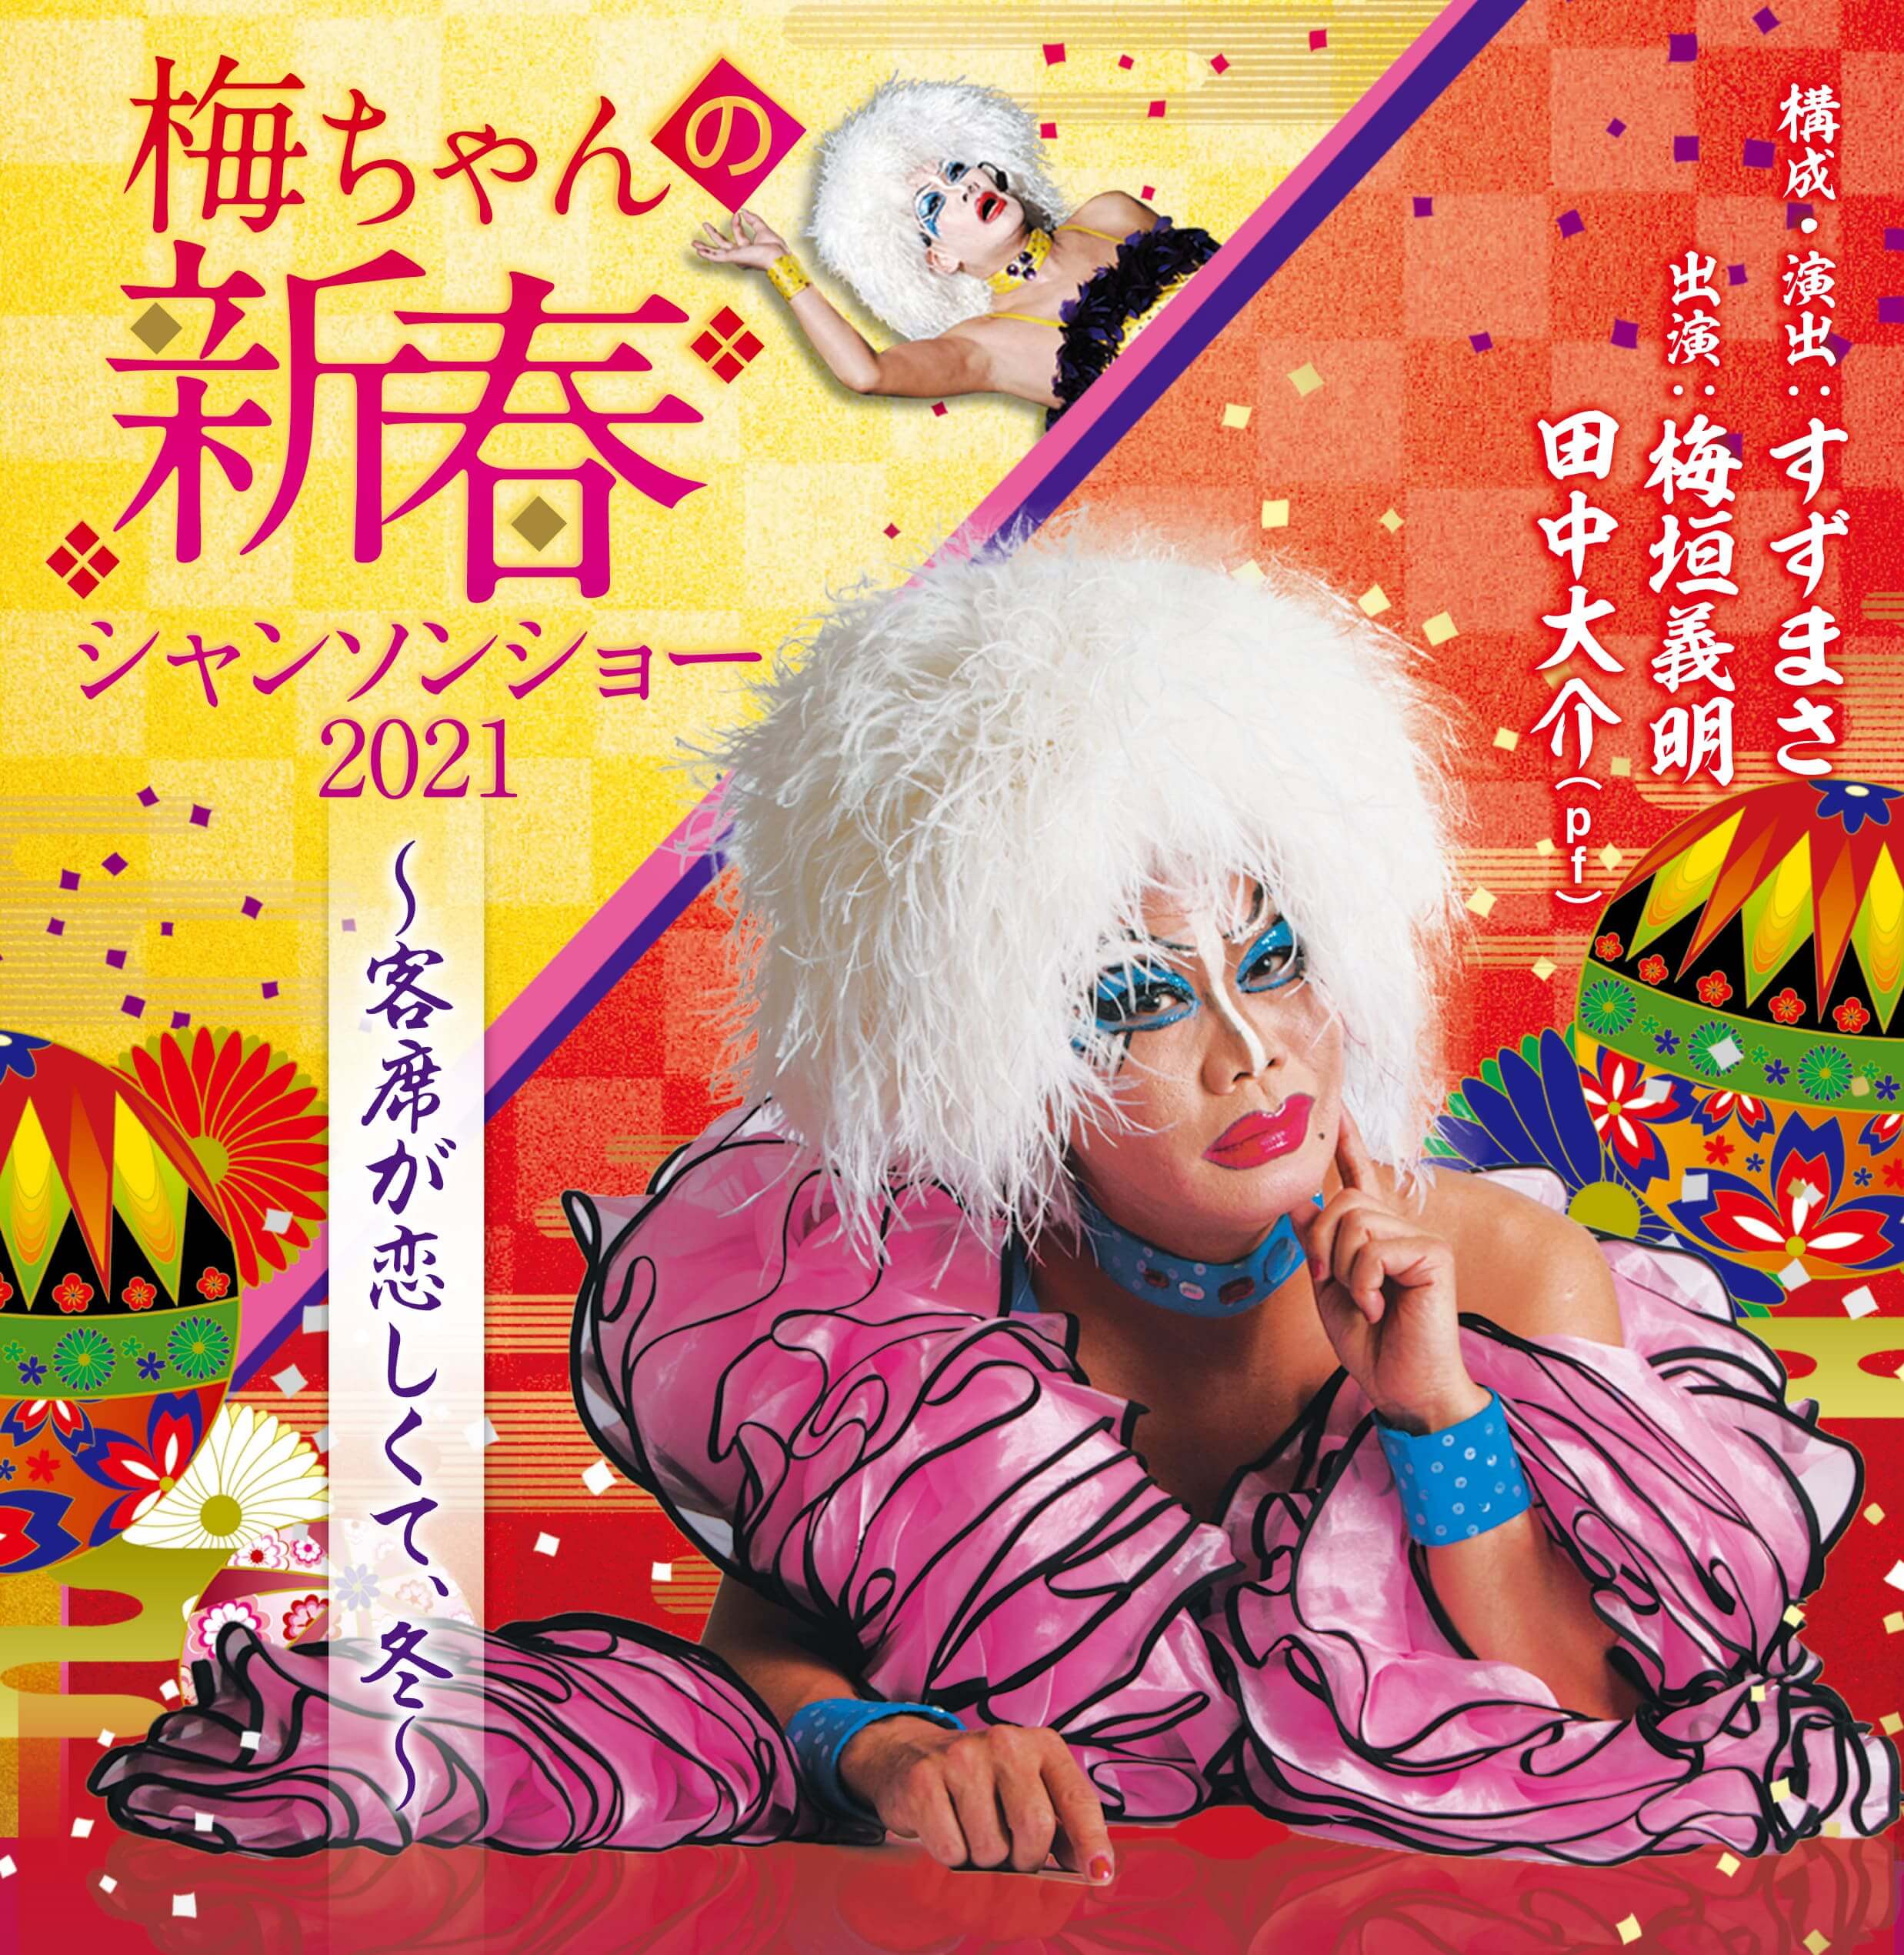 新しいことに挑戦し続ける「新型・梅ちゃん」を見よ！ワハハ本舗の歌姫「梅ちゃん」こと梅垣義明が、2021年1月に大阪・2月に東京で恒例の新春シャンソンショーを 開催することが決まった。